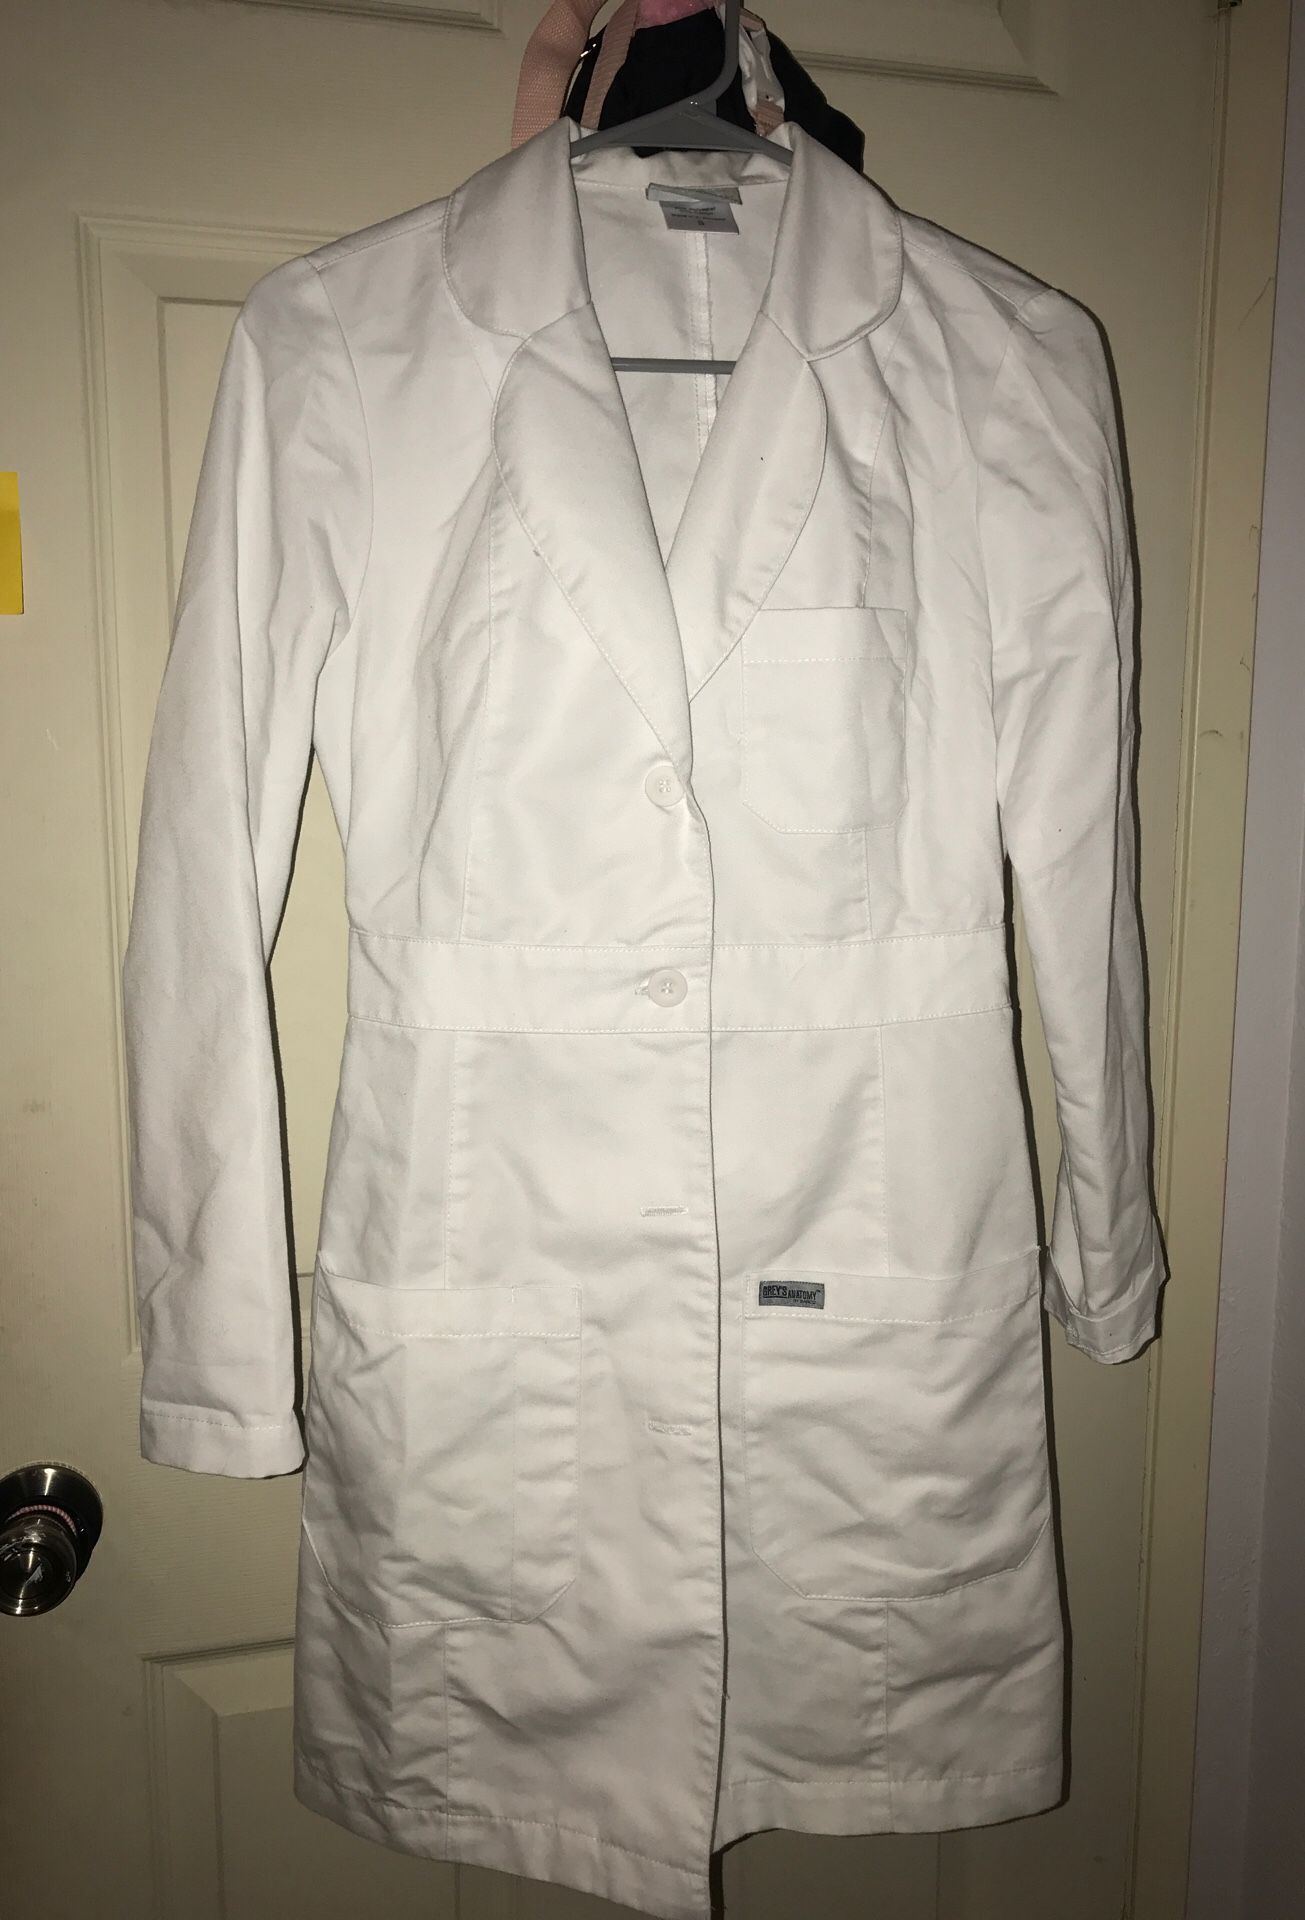 Grey’s Anatomy Lab Coat sz Small